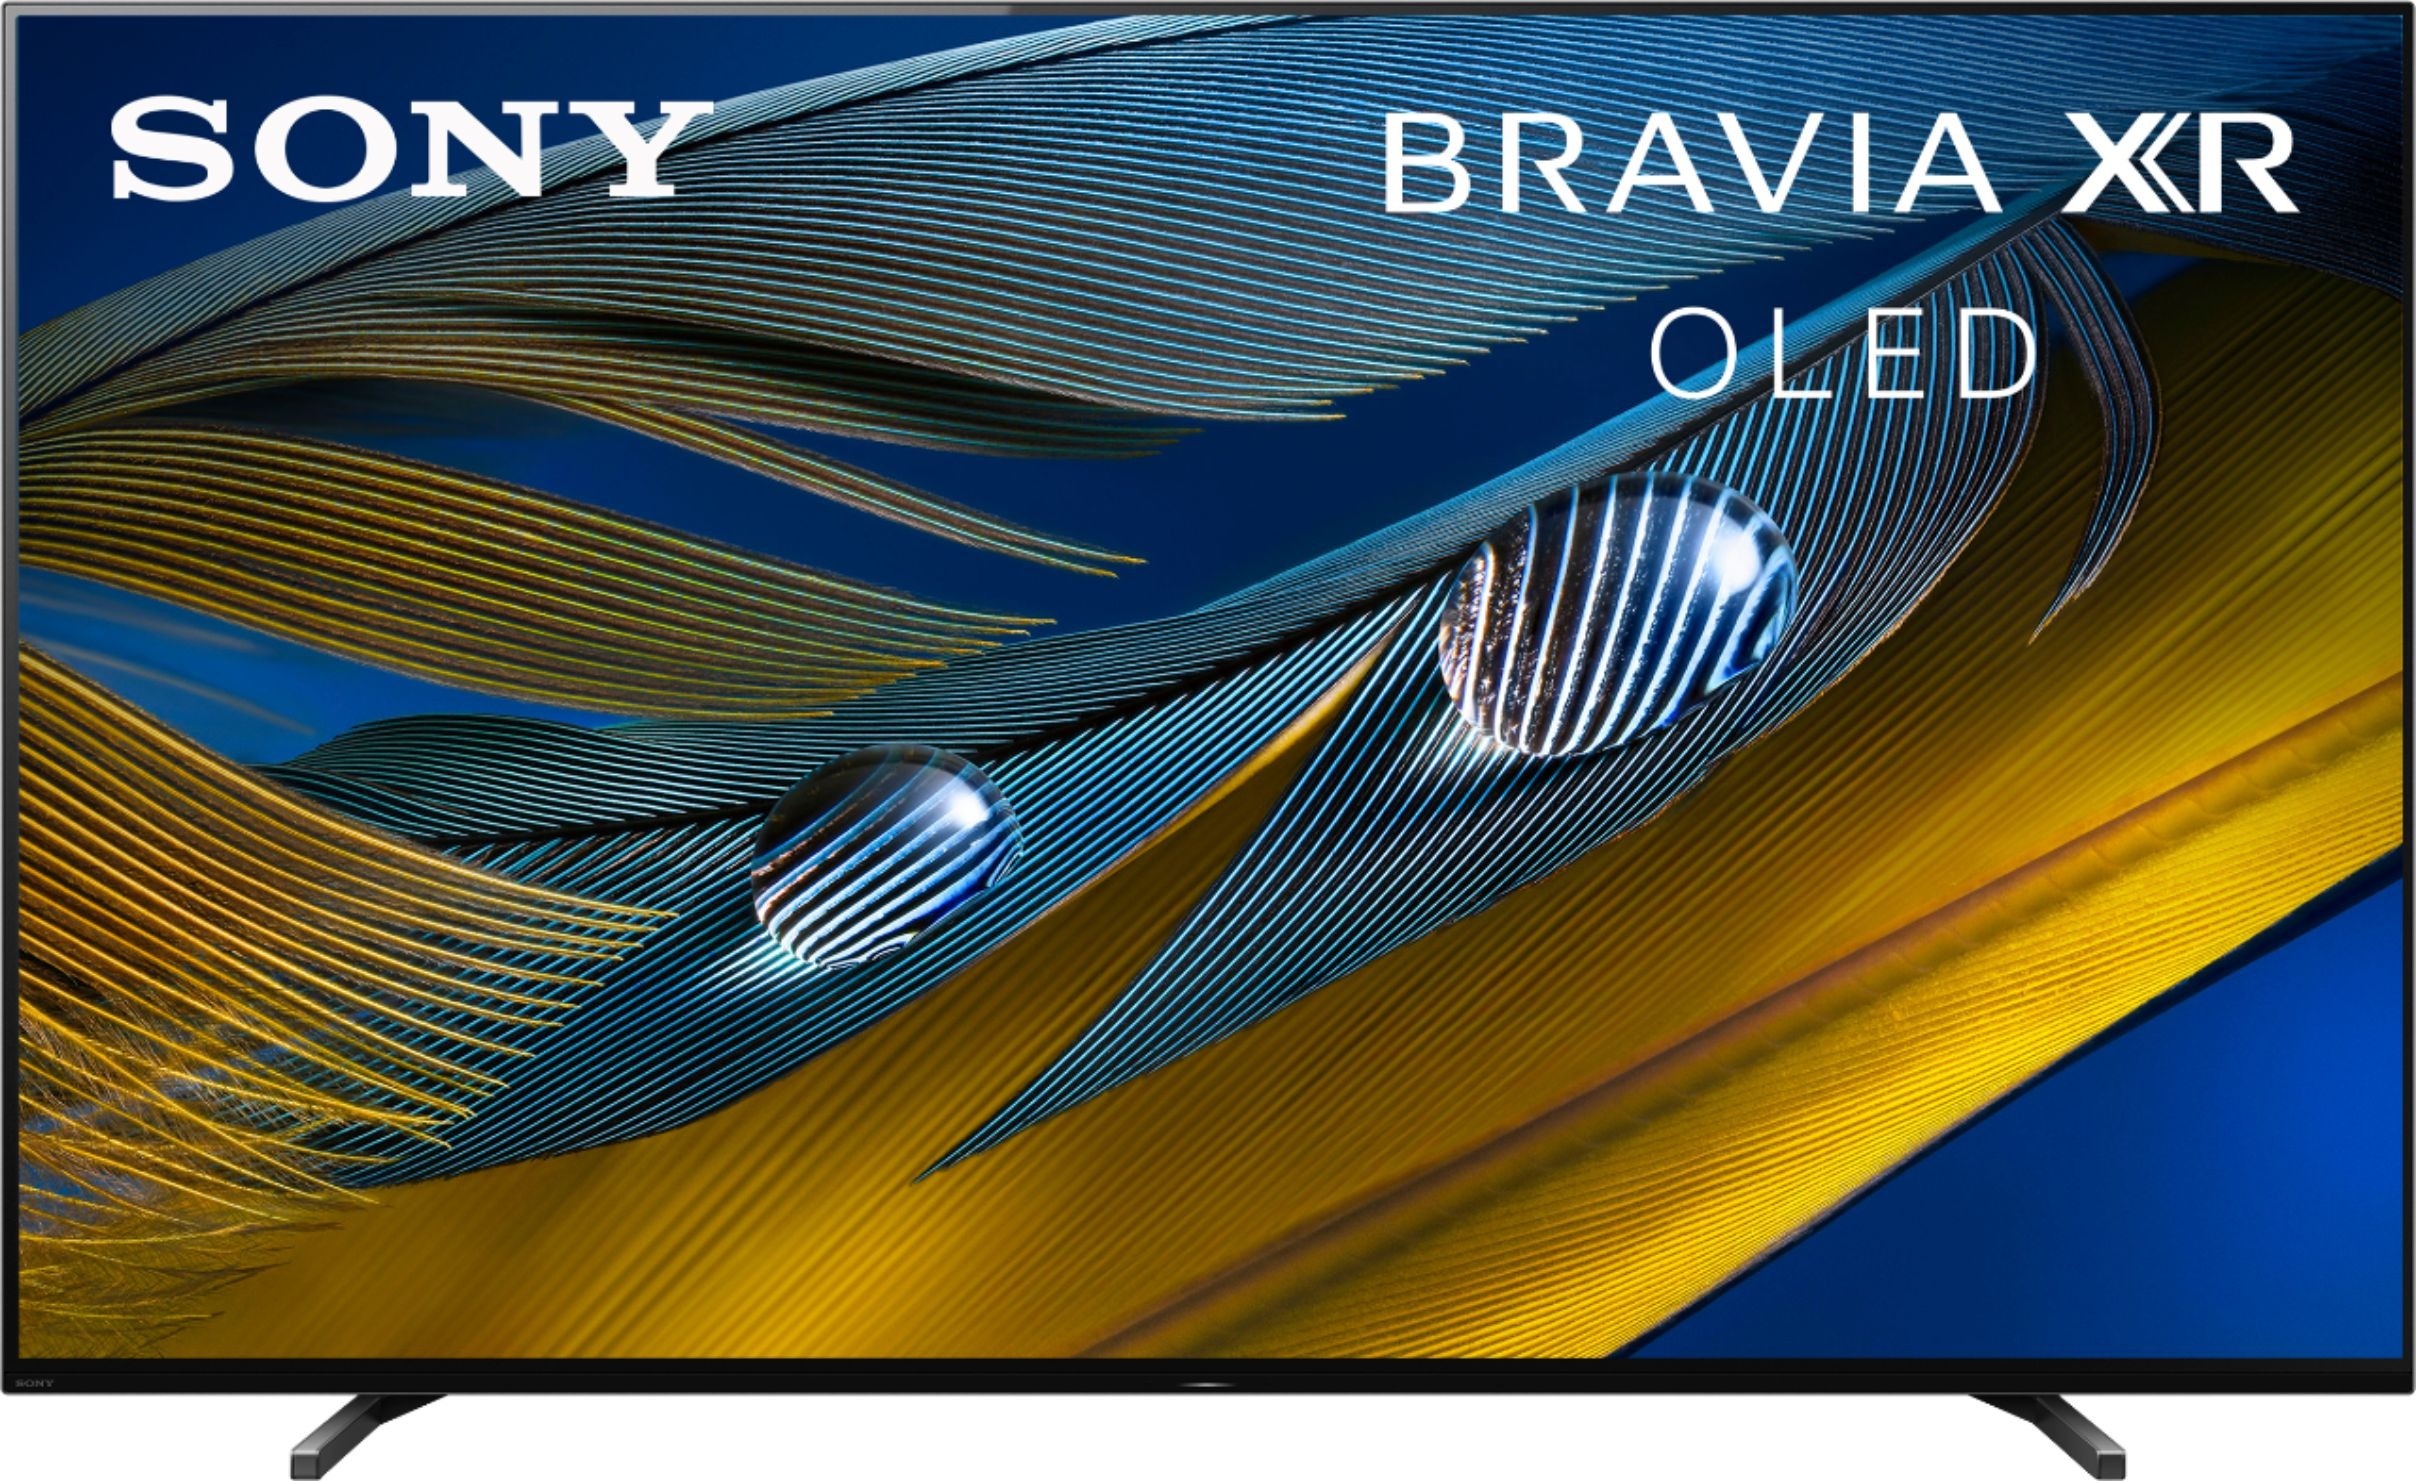 Sony - 65" Class BRAVIA XR A80J Series OLED 4K UHD Smart Google TV $1299.99